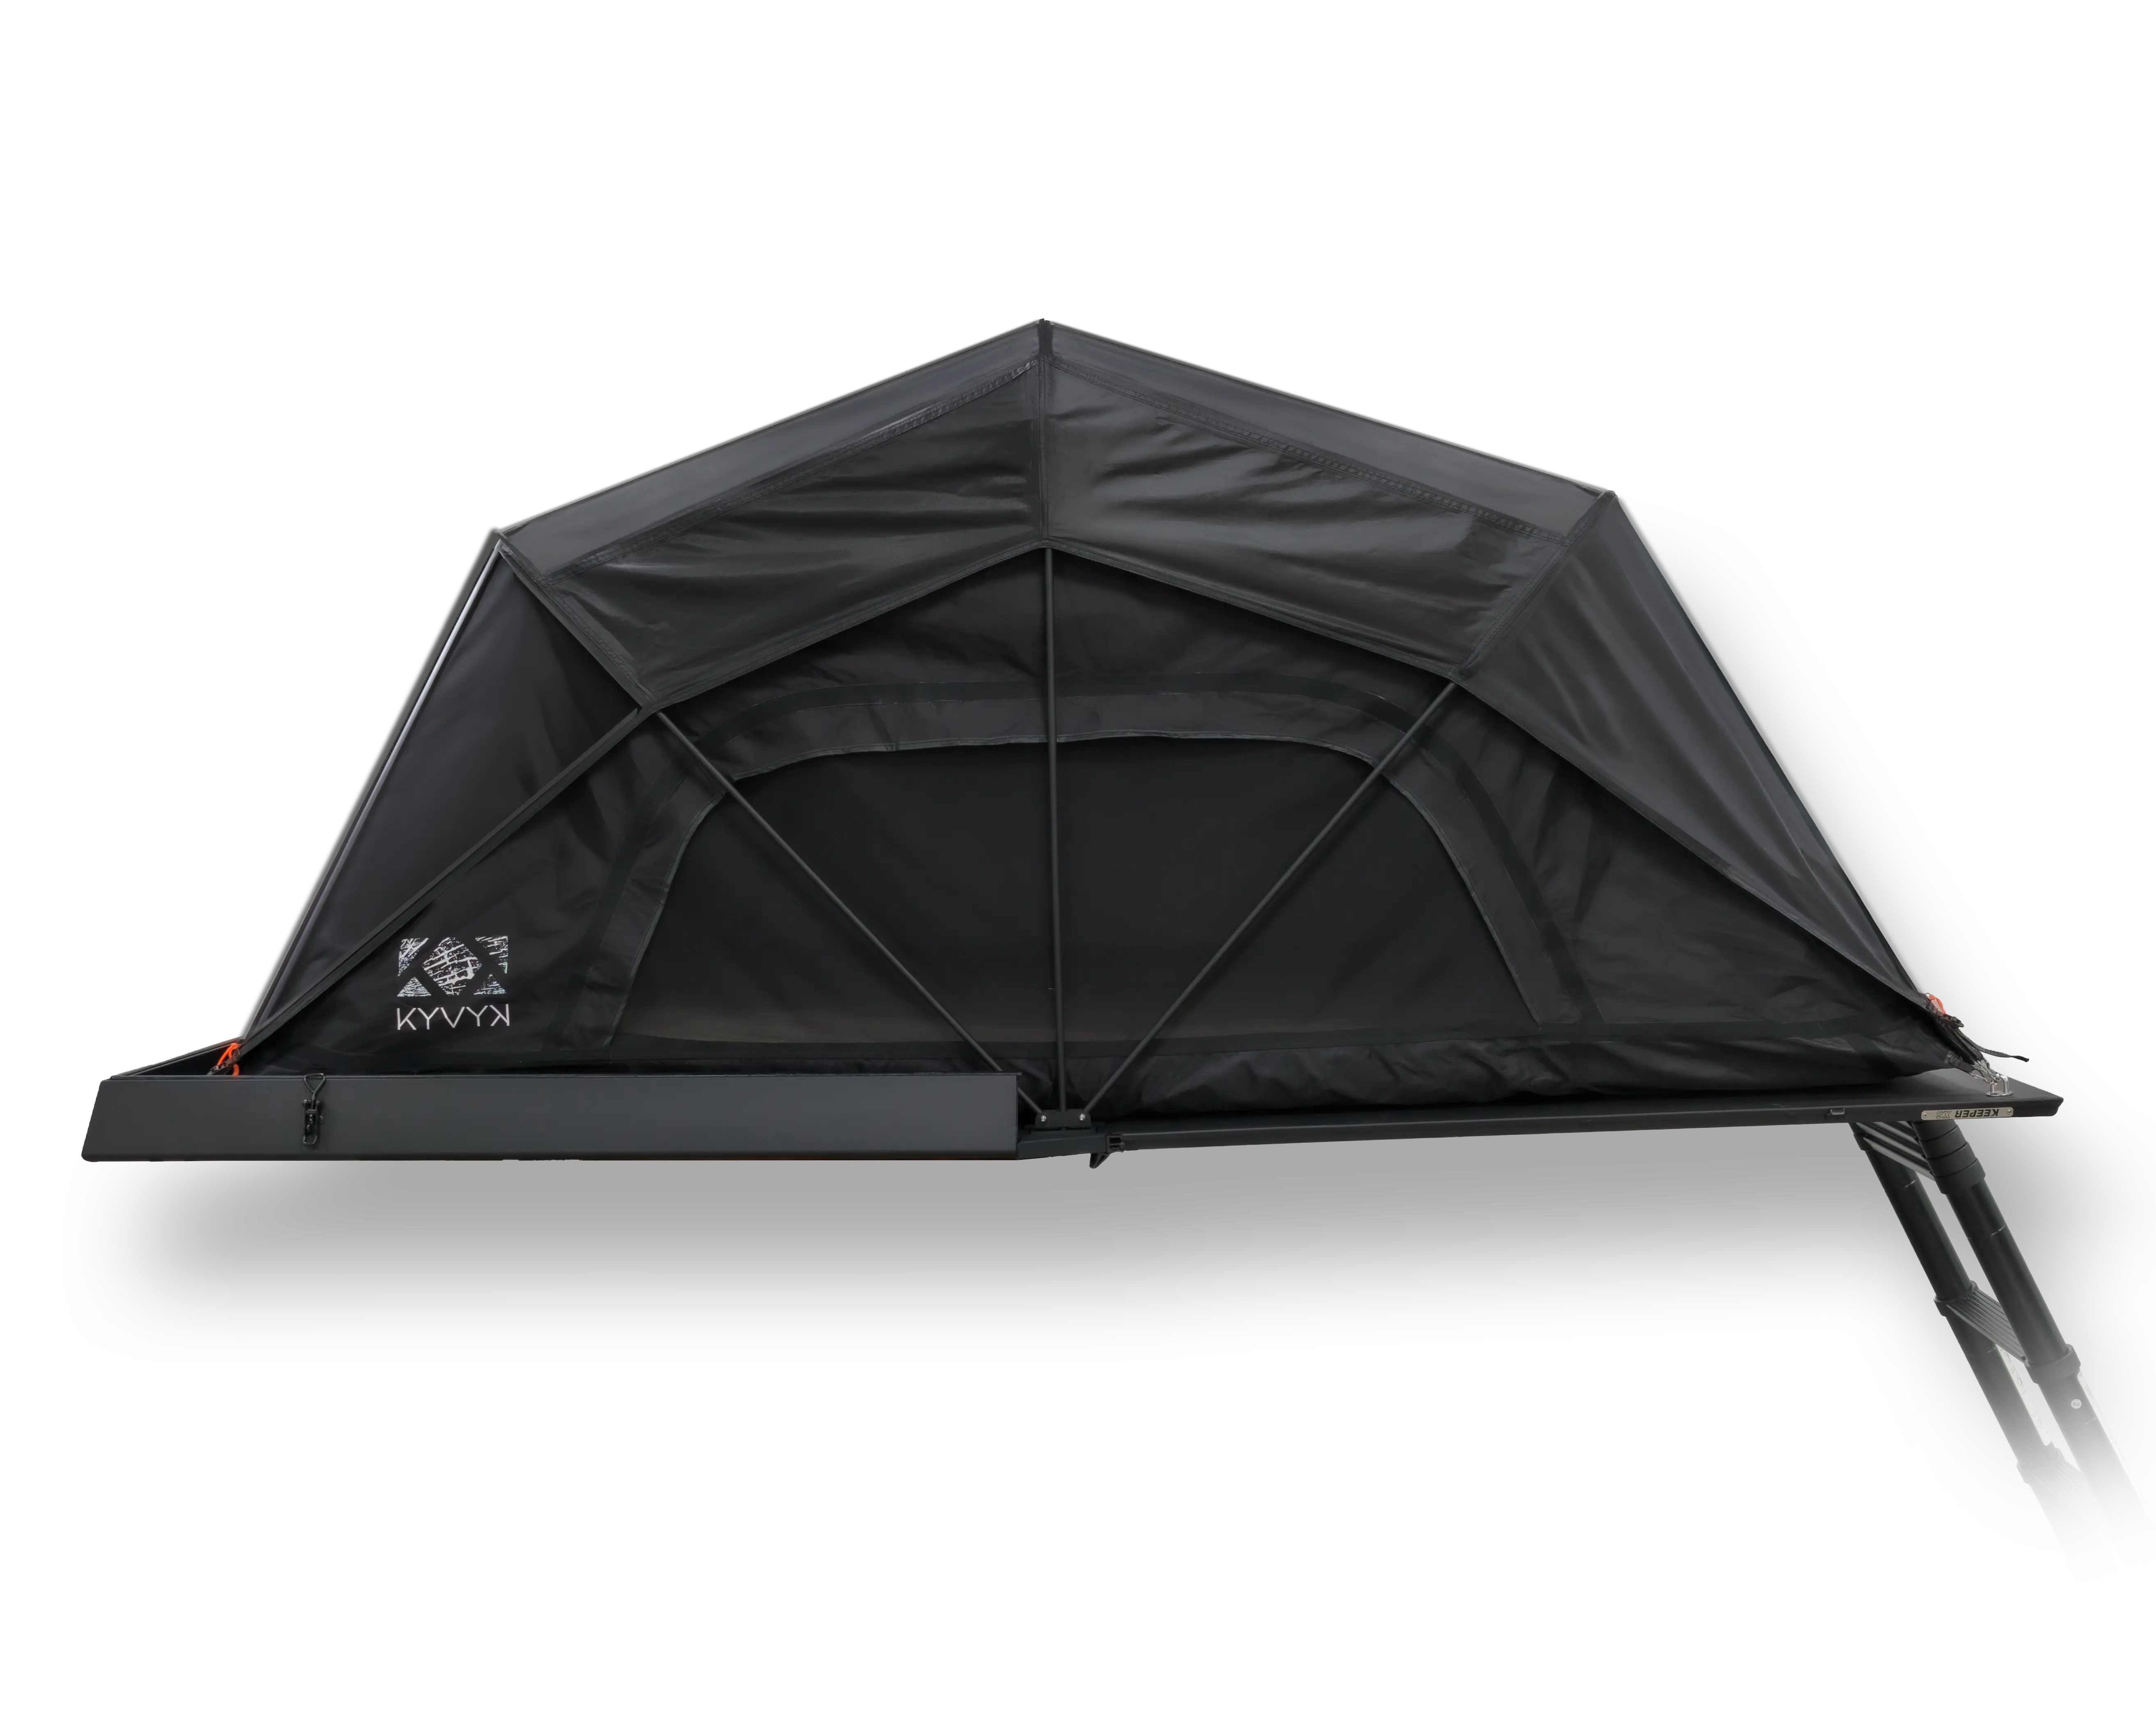  Nos tentes de toit sont conçues pour durer et résister à toutes les conditions météorologiques. Elles sont faciles à installer et à ranger, pour un maximum de confort et de liberté lors de vos aventures. 